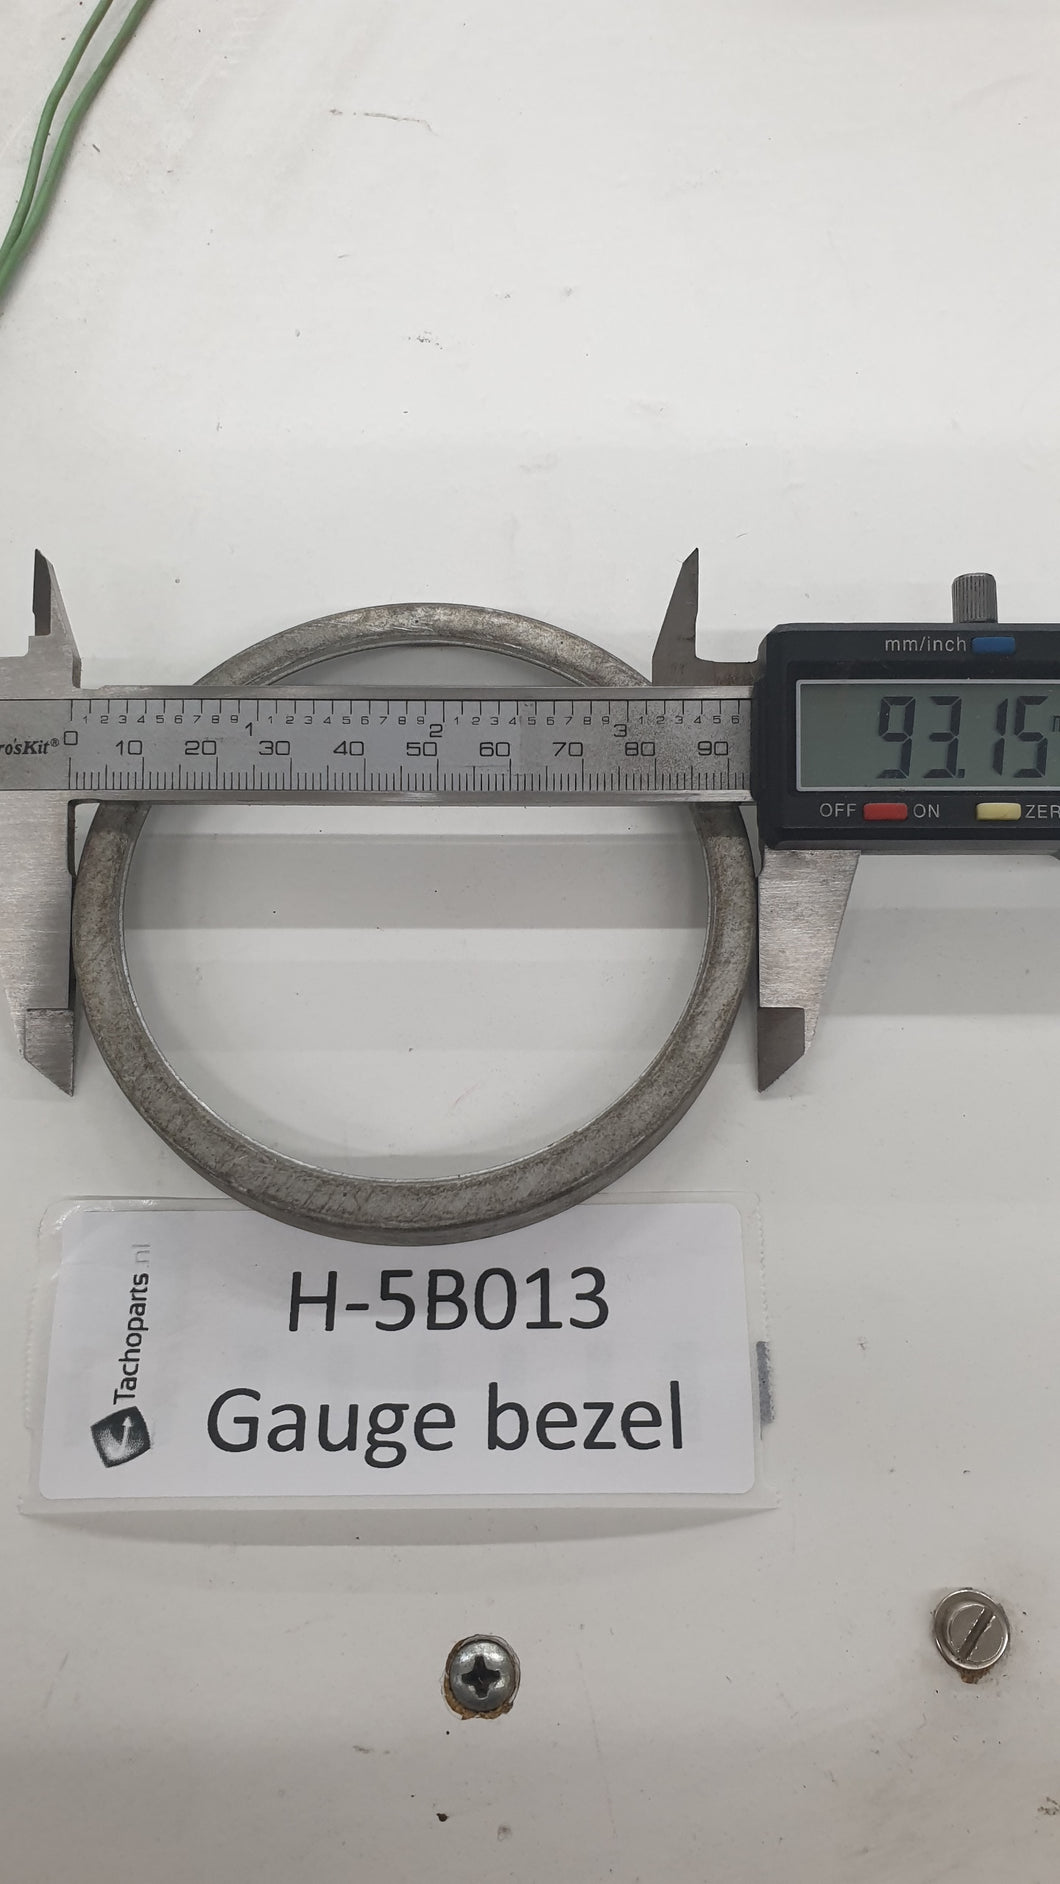 H-5B013 gauge bezel